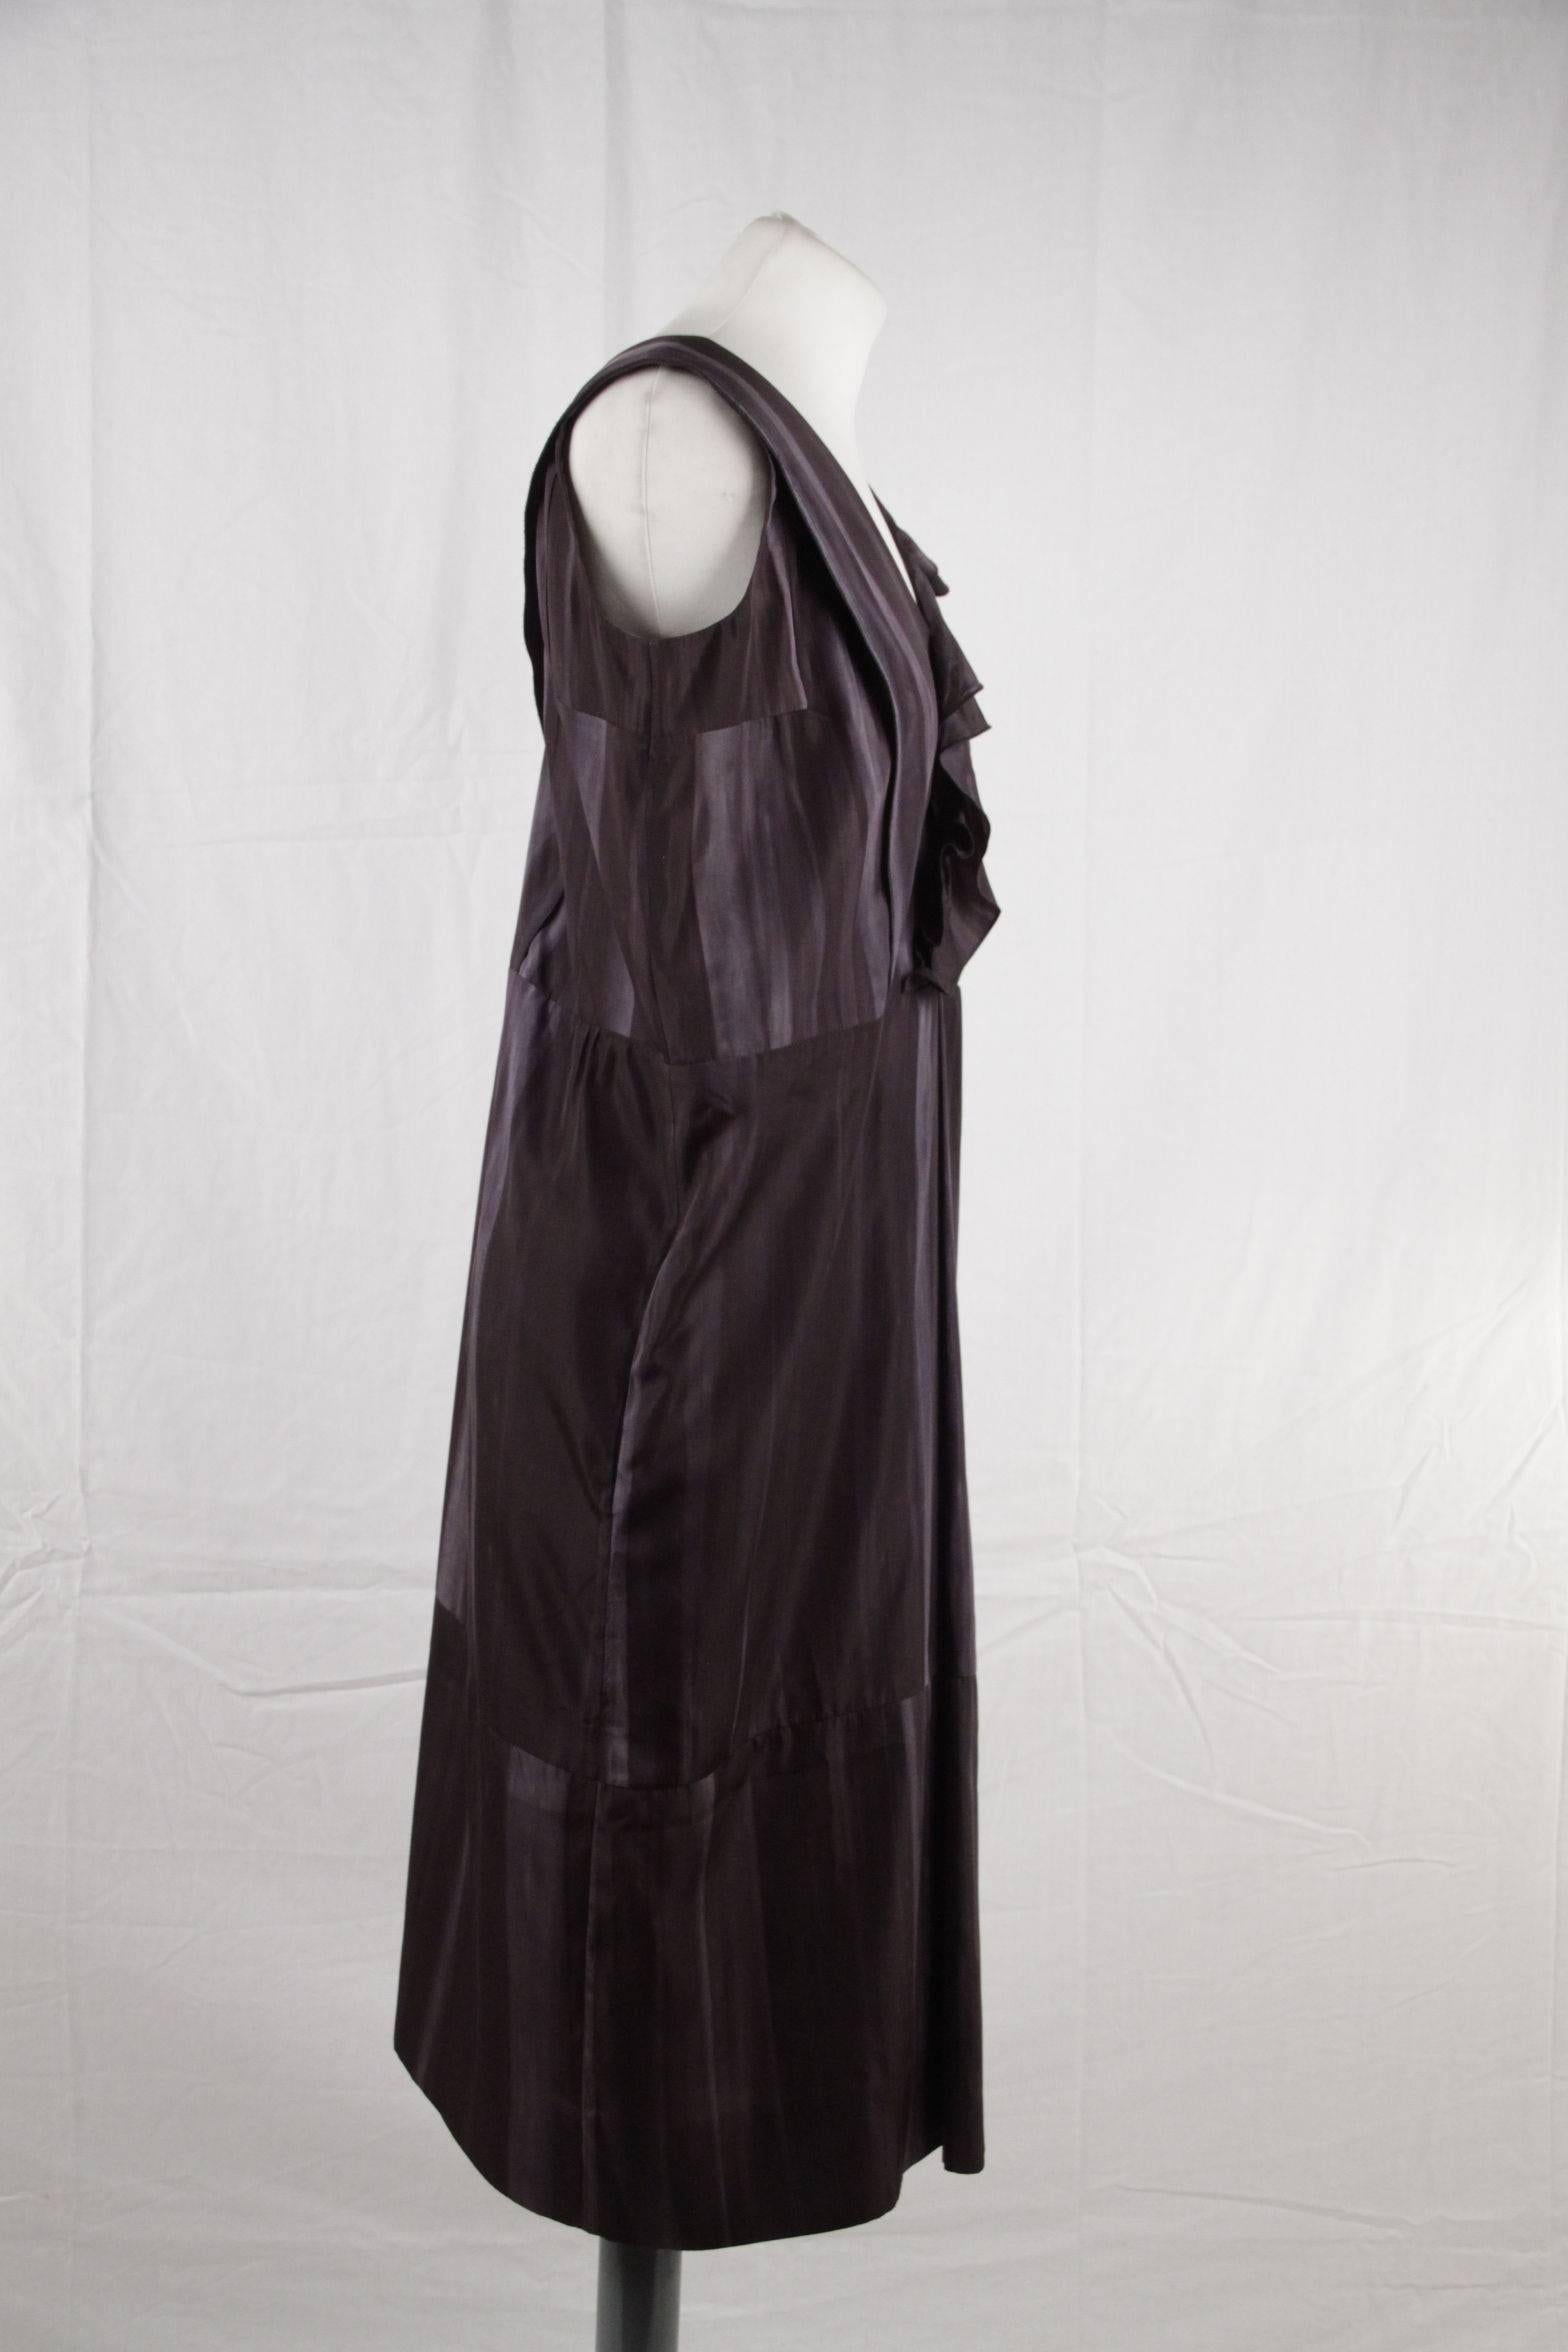 Black  MARNI Silky Dye Pattern SLEEVELESS DRESS w/ FRILLS SIZE 40